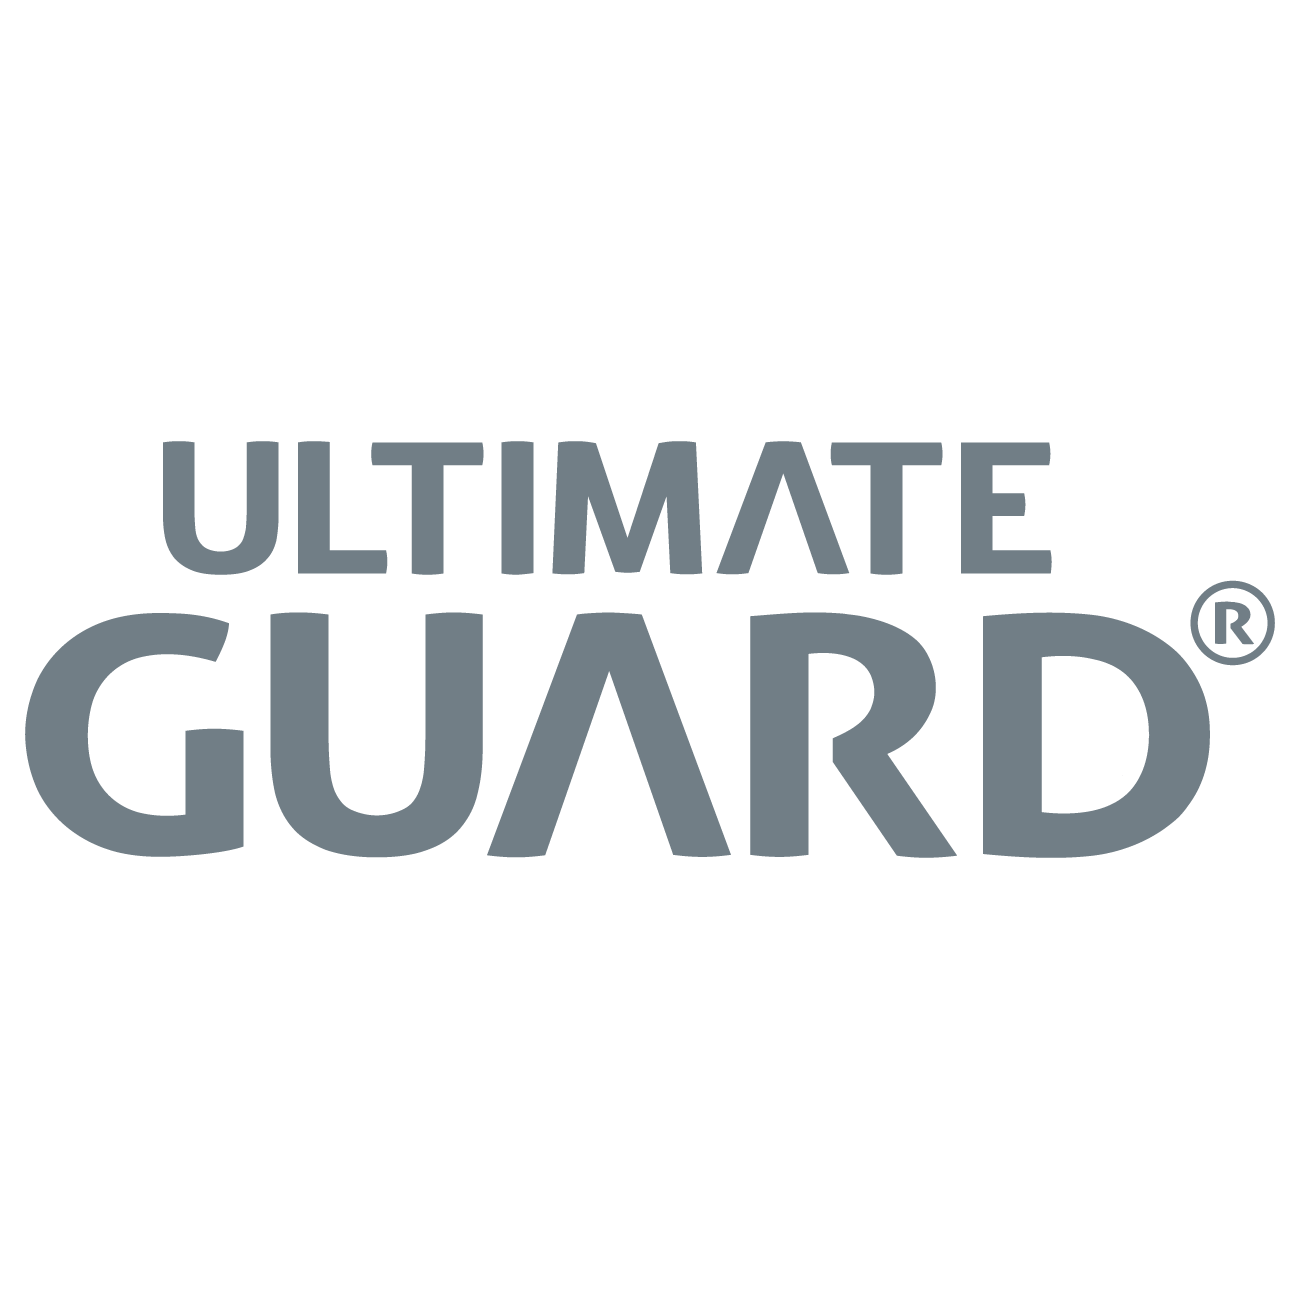 Ultimate Guard Sammelkartenzubehör jetzt kaufen. Ultimate Guard ist der Ausstatter für alle Sammelkartenfans.